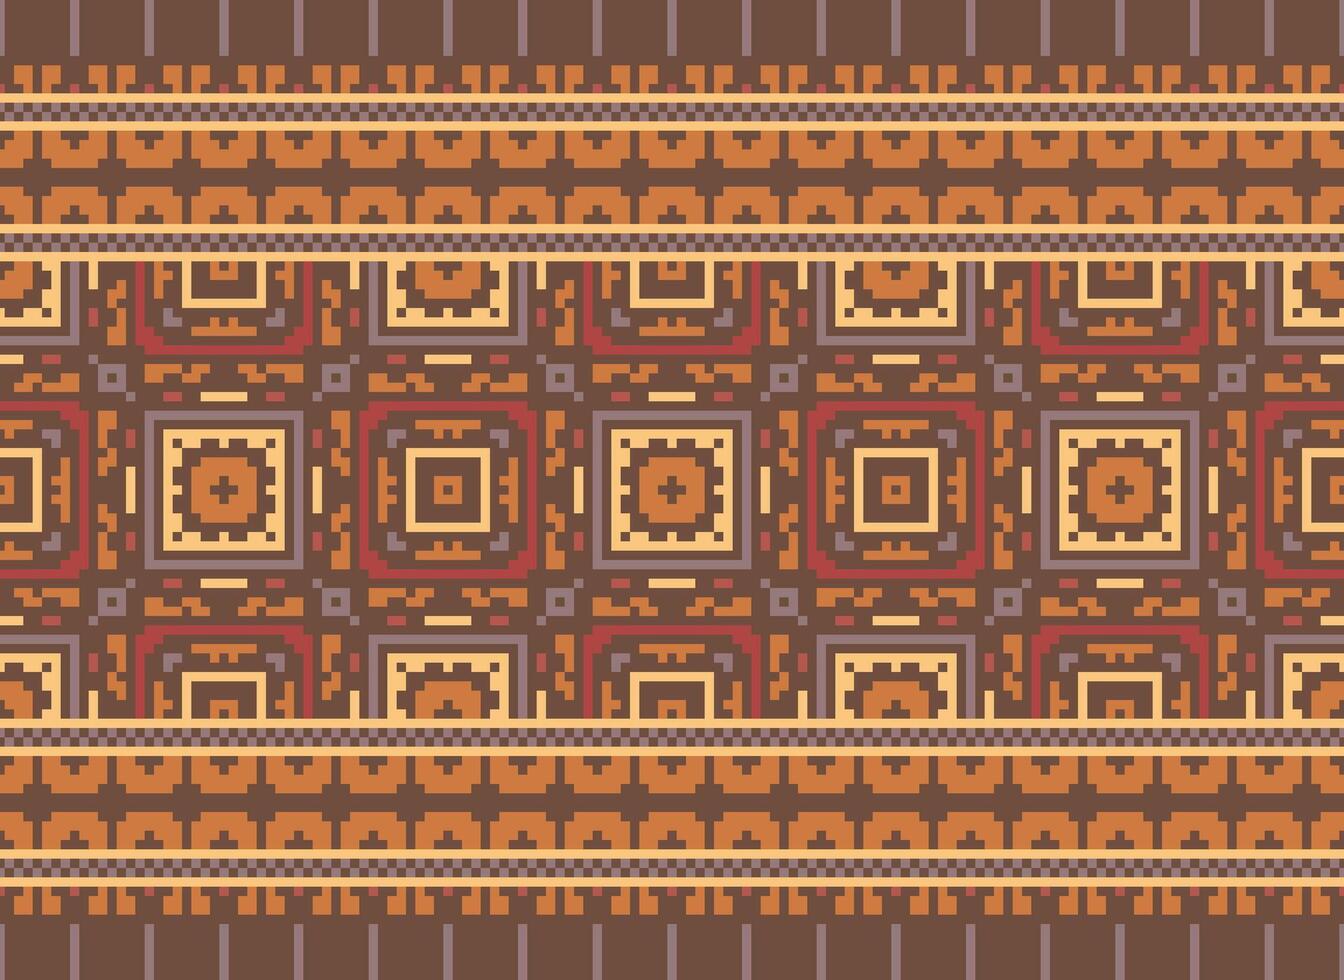 pixel ikat e attraversare punto geometrico senza soluzione di continuità modello etnico orientale tradizionale. azteco stile illustrazione design per tappeto, sfondo, vestiario, avvolgere, batik. vettore